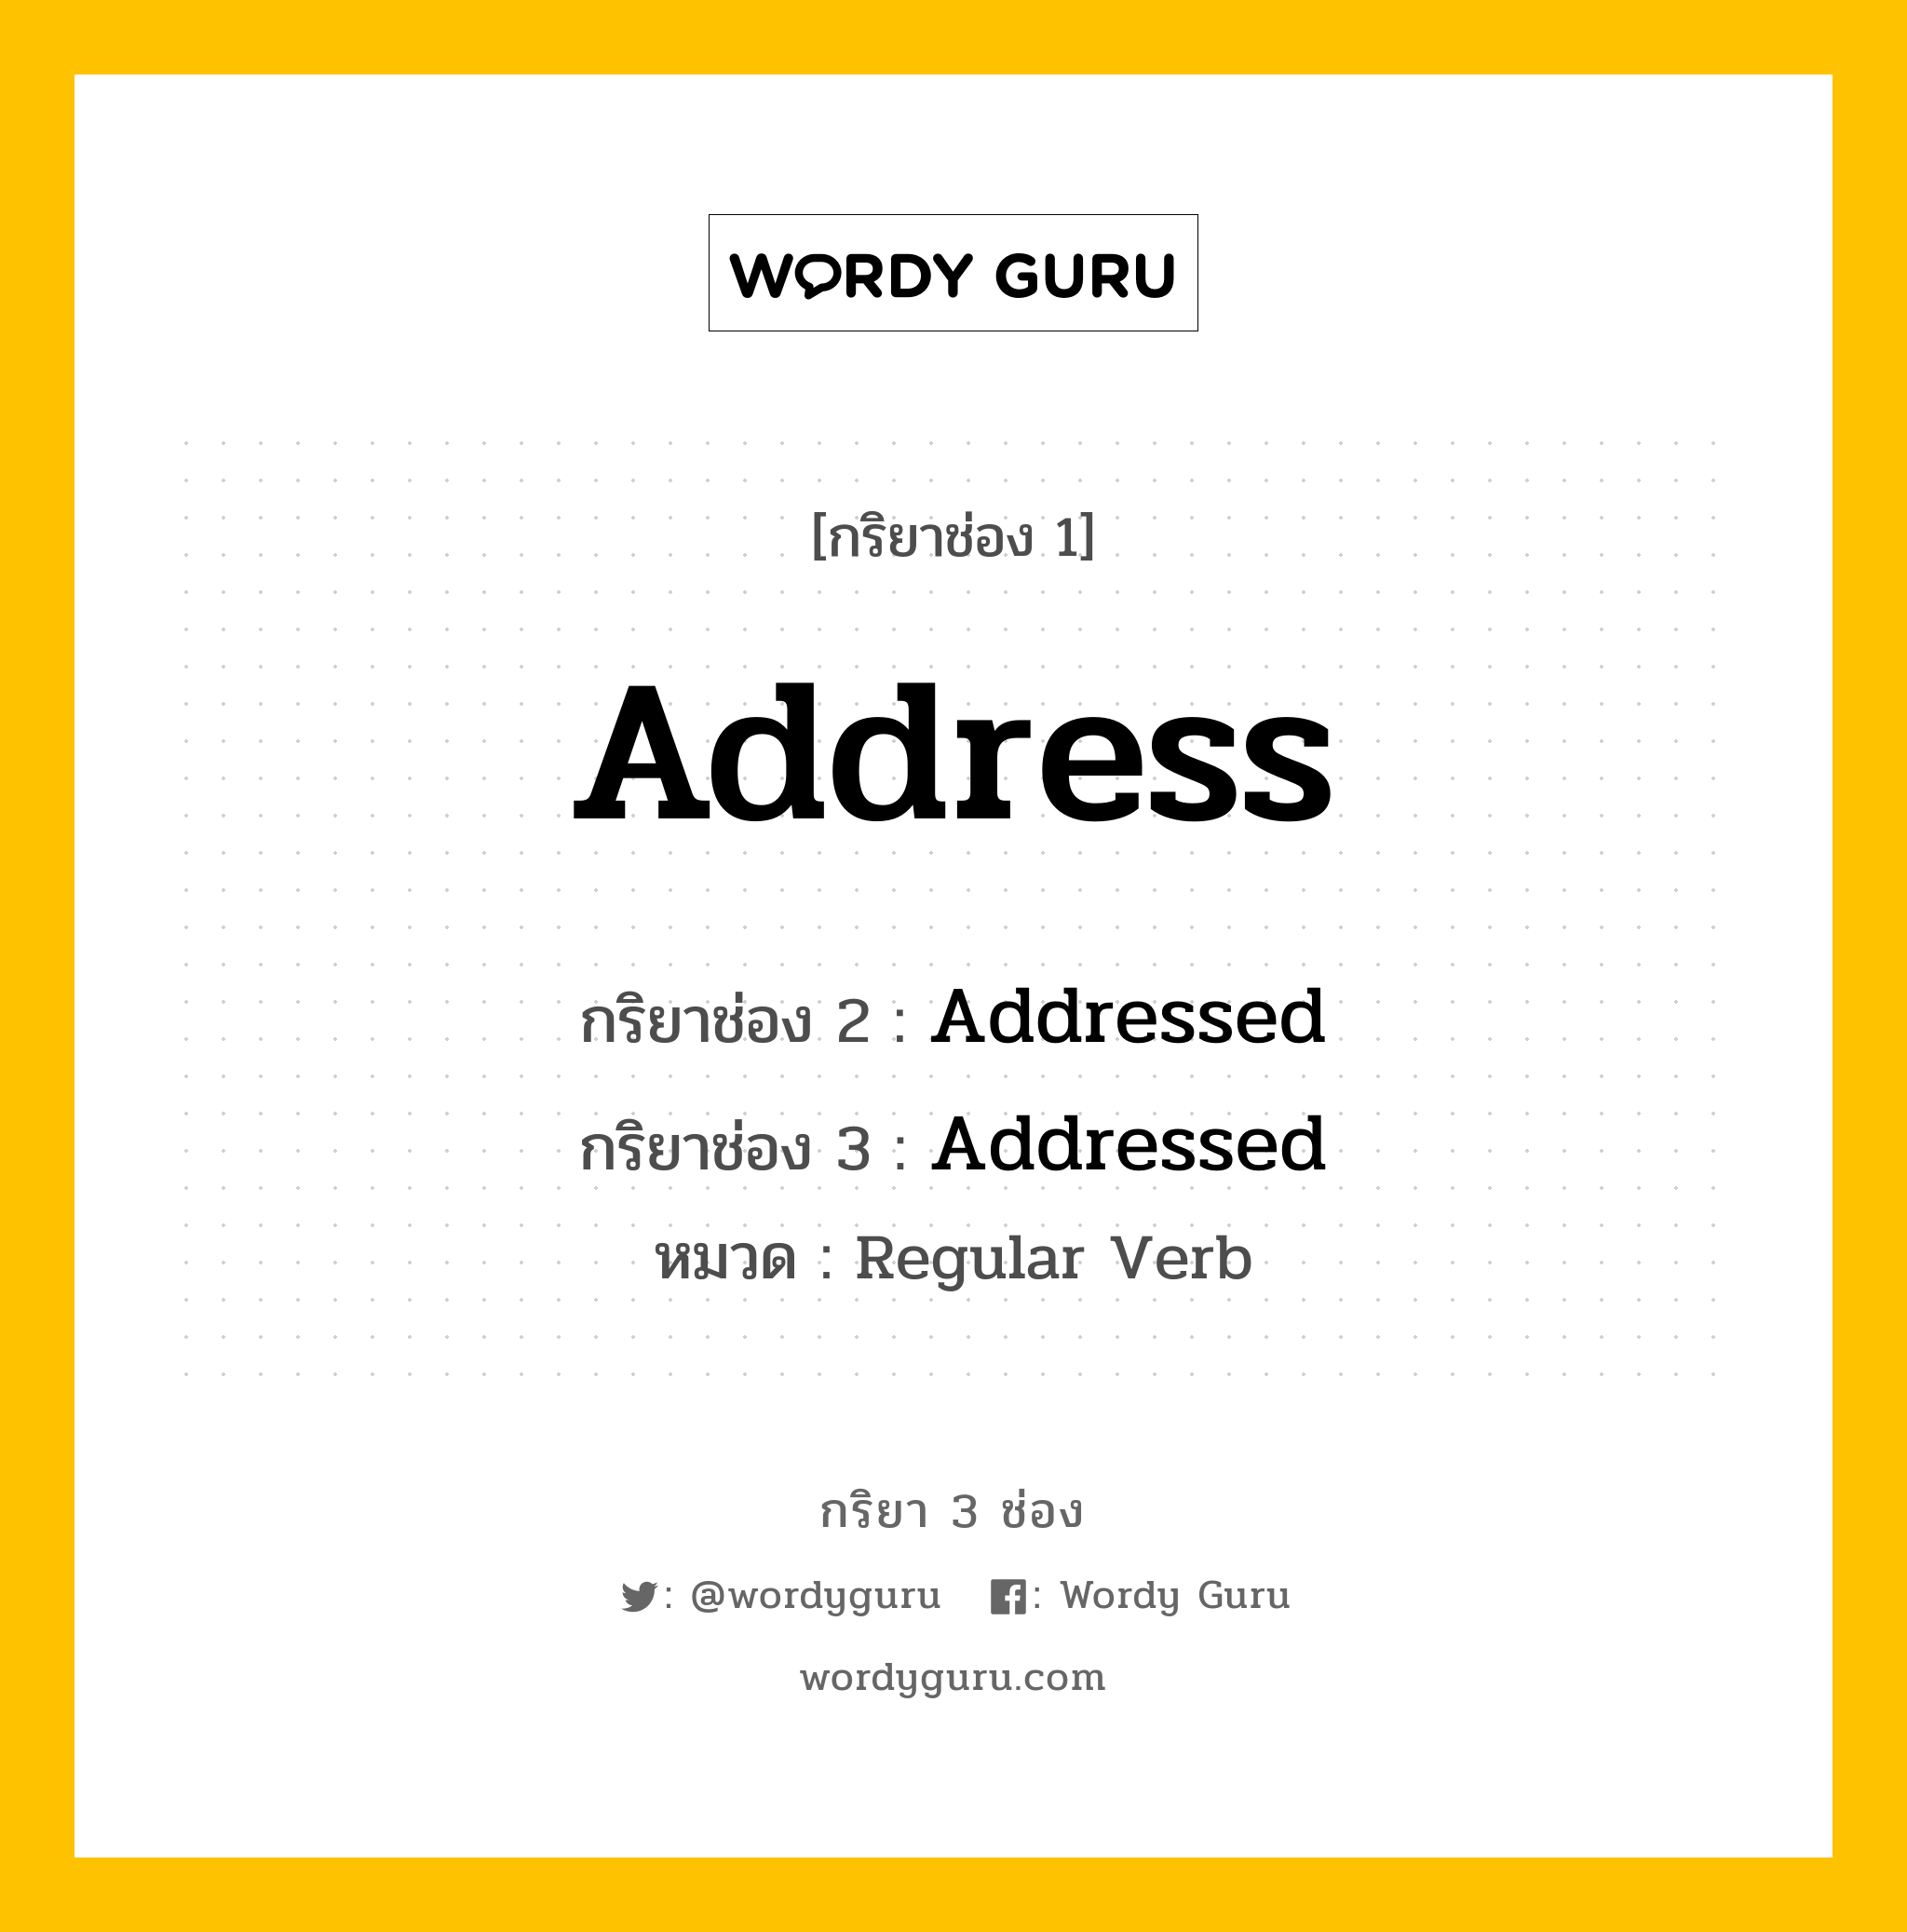 Address มีกริยา 3 ช่องอะไรบ้าง? คำศัพท์ในกลุ่มประเภท Regular Verb, กริยาช่อง 1 Address กริยาช่อง 2 Addressed กริยาช่อง 3 Addressed หมวด Regular Verb หมวด Regular Verb